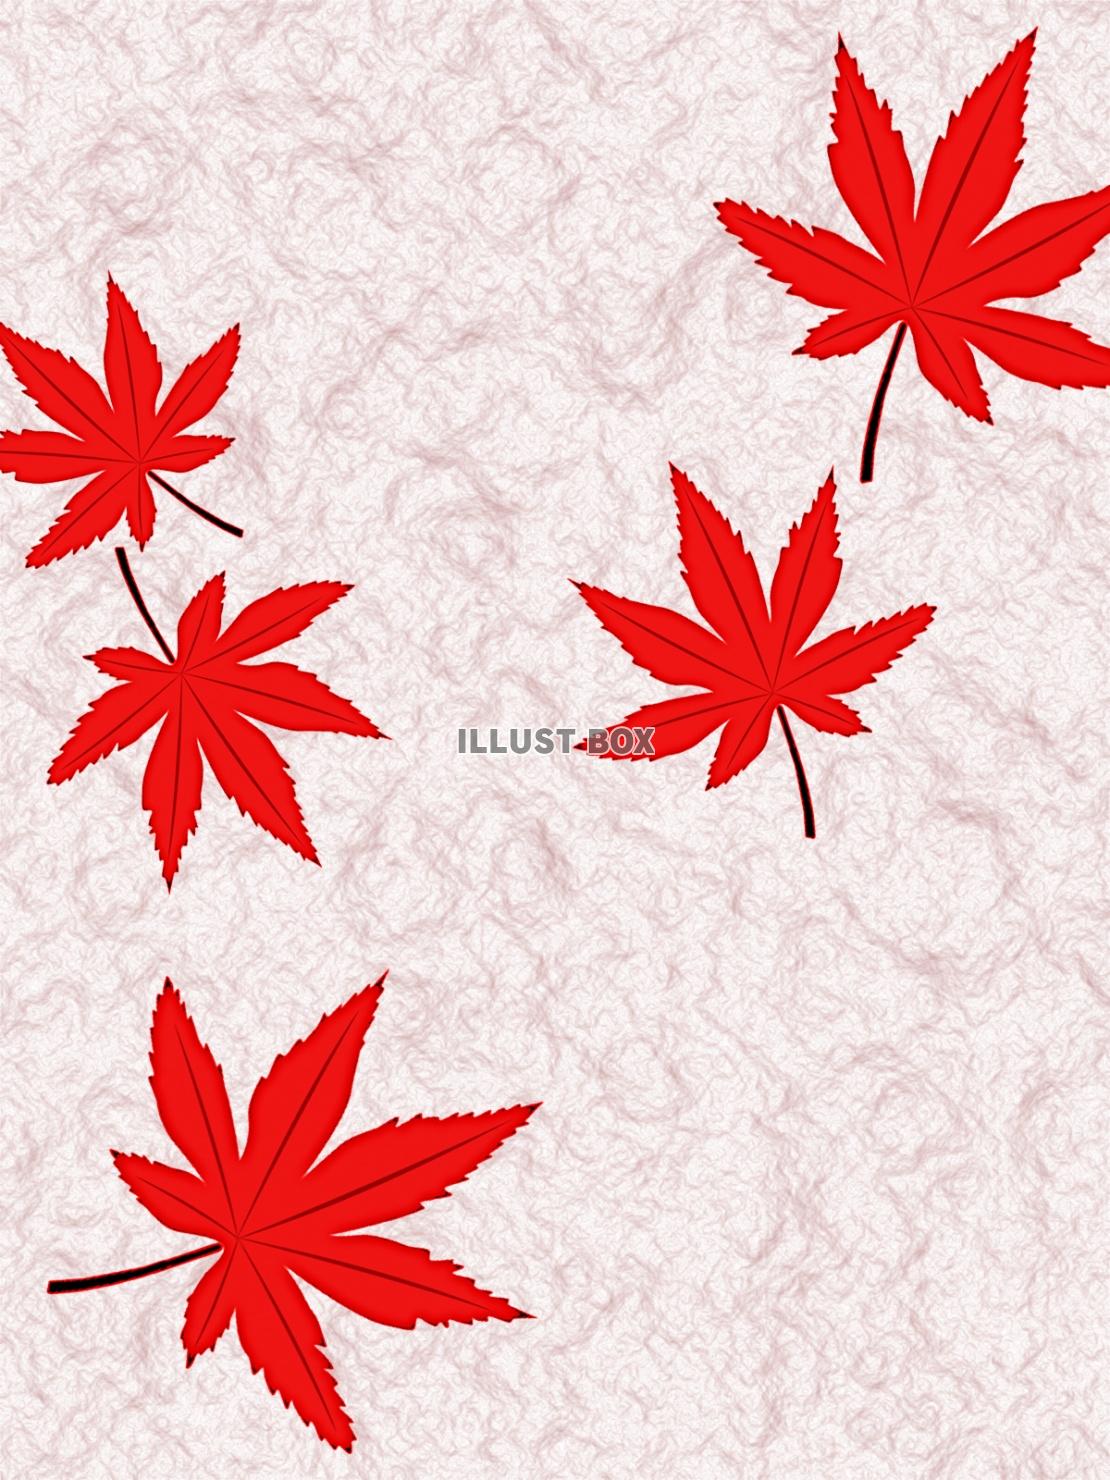 無料イラスト 和紙に紅葉の葉っぱ壁紙シンプル背景素材イラスト